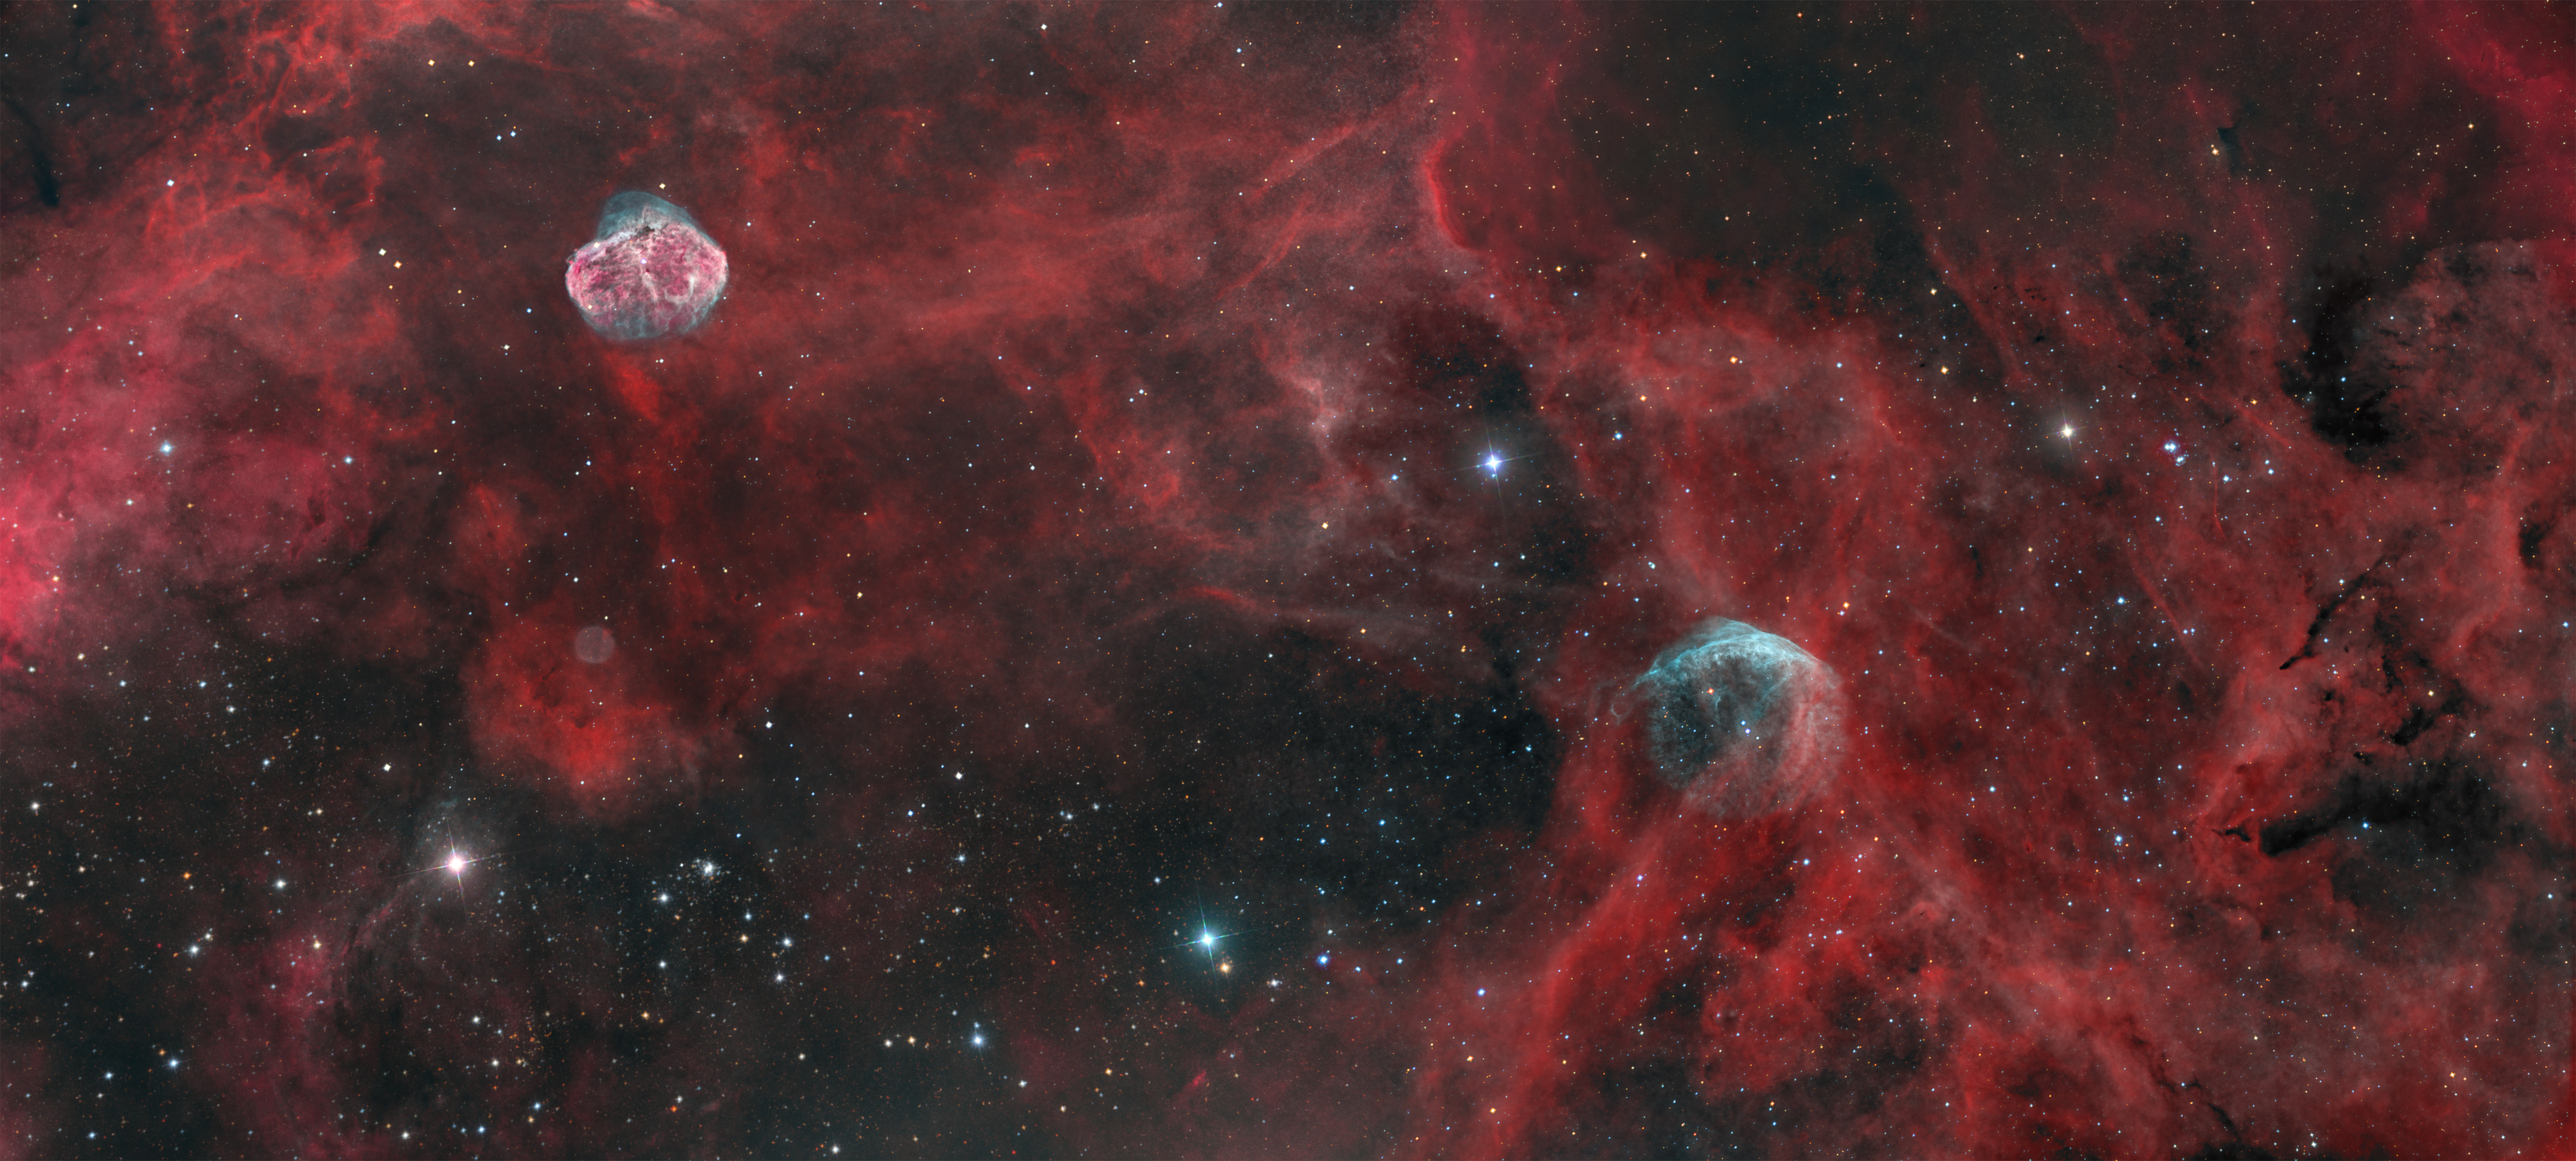 W134-NGC6888-JU1 in Cygnus